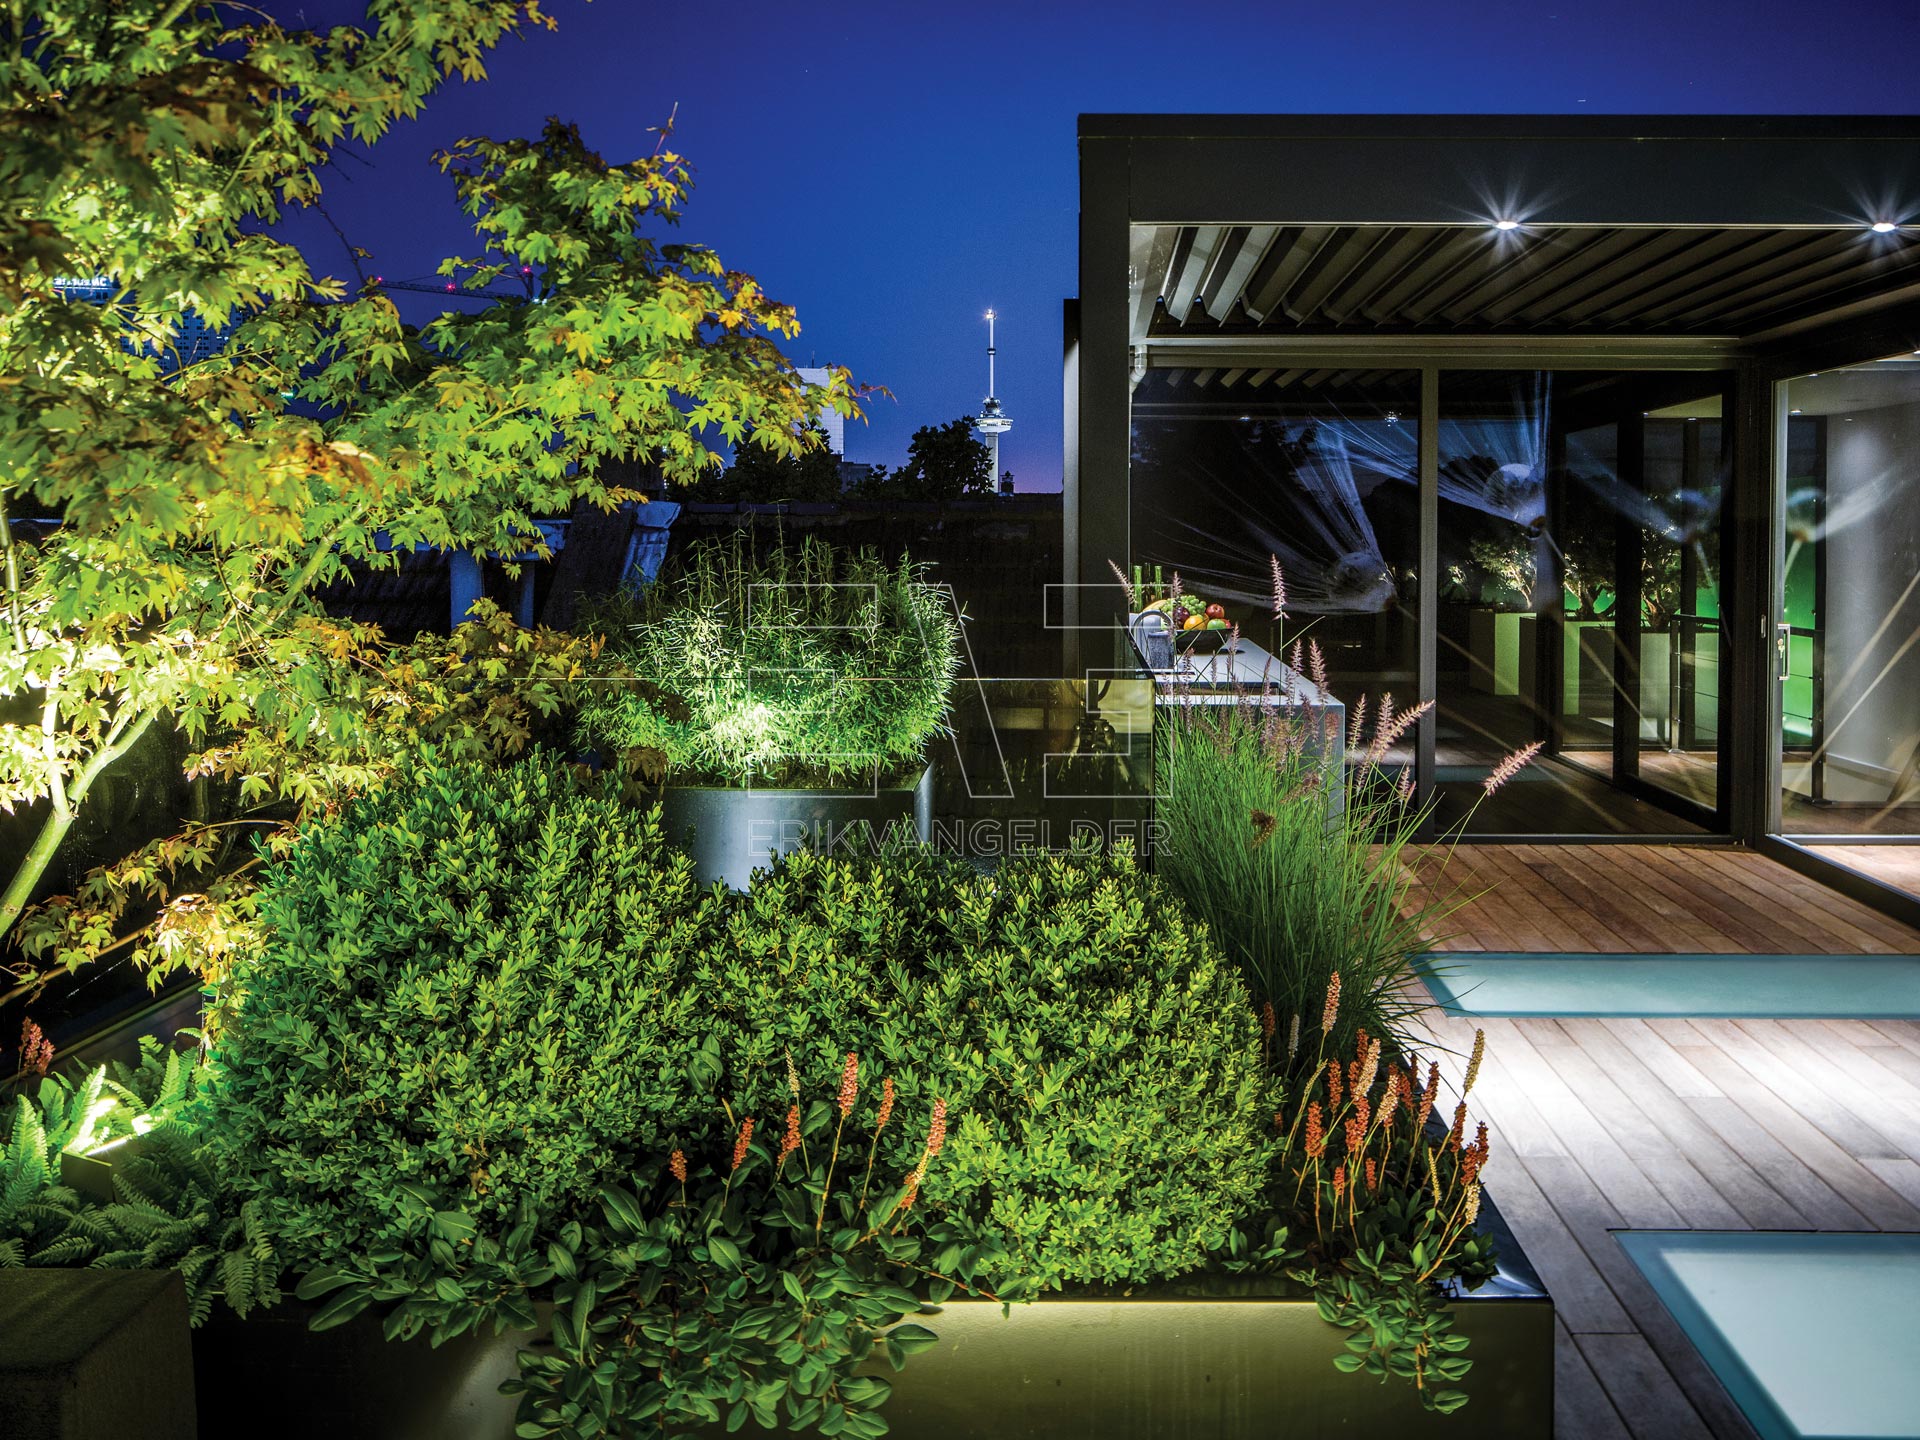 Exclusive roof garden dakterras sfeervol met moderne luxe overkapping lamellendak verlicht buitenkeuken erikvangelder tuinarchitect